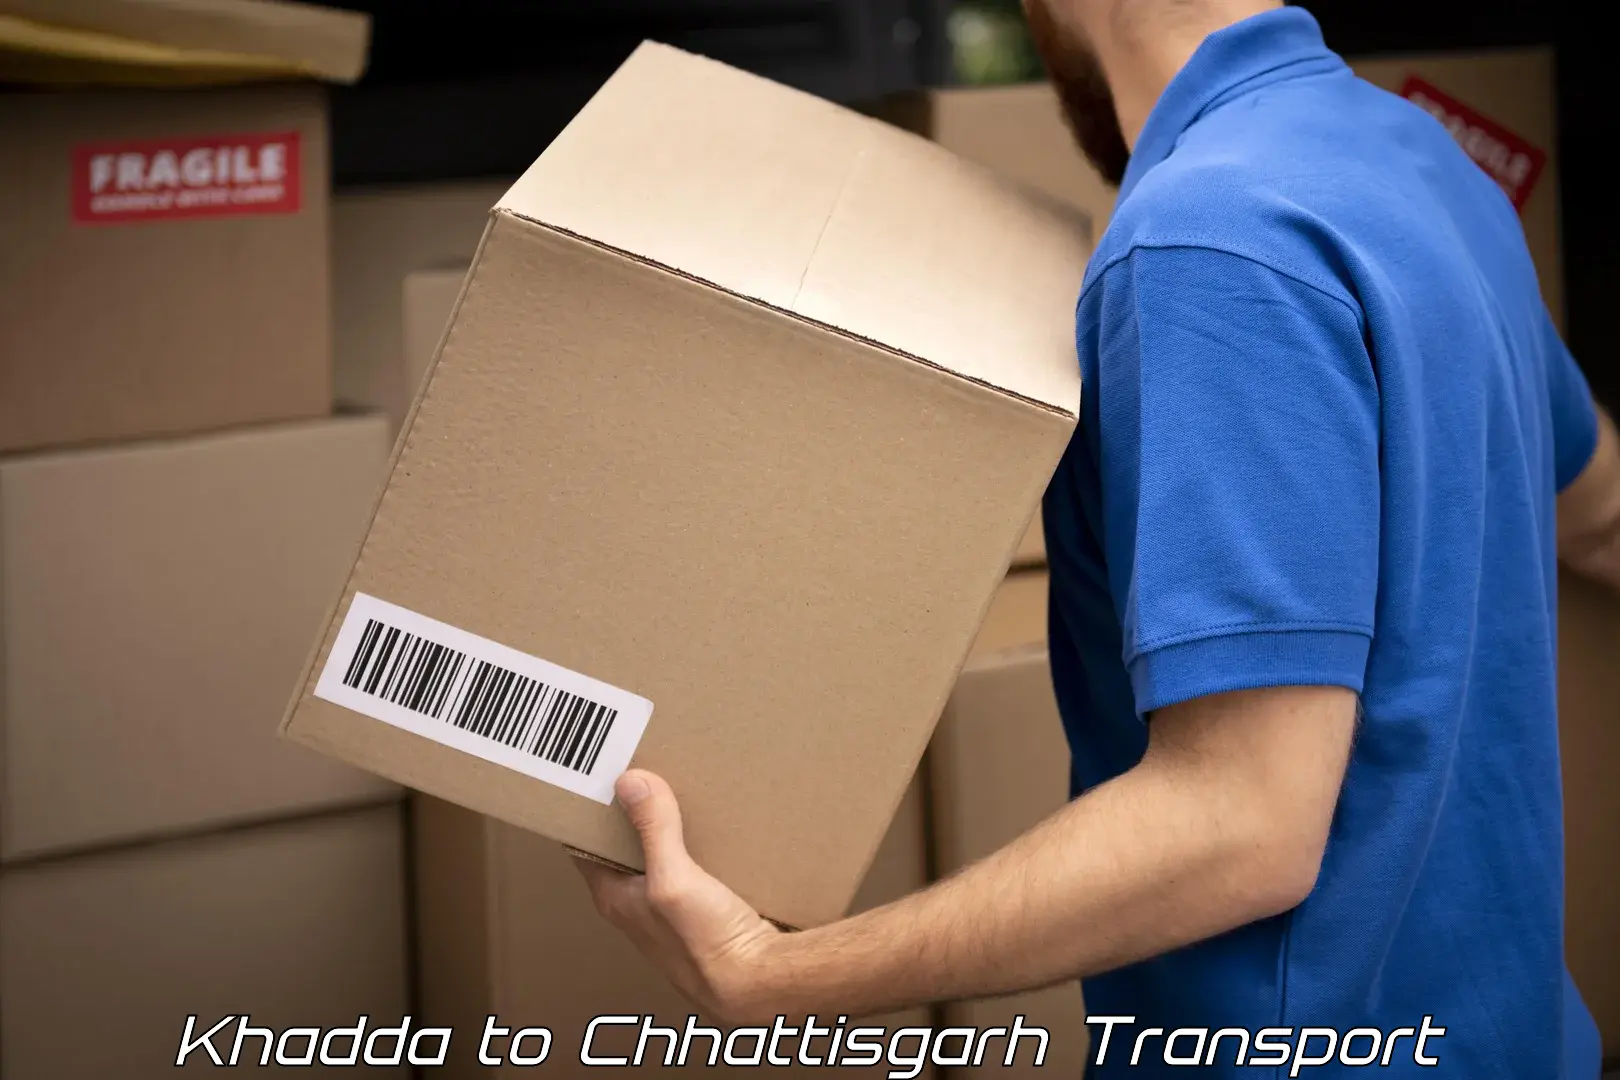 India truck logistics services Khadda to Patna Chhattisgarh